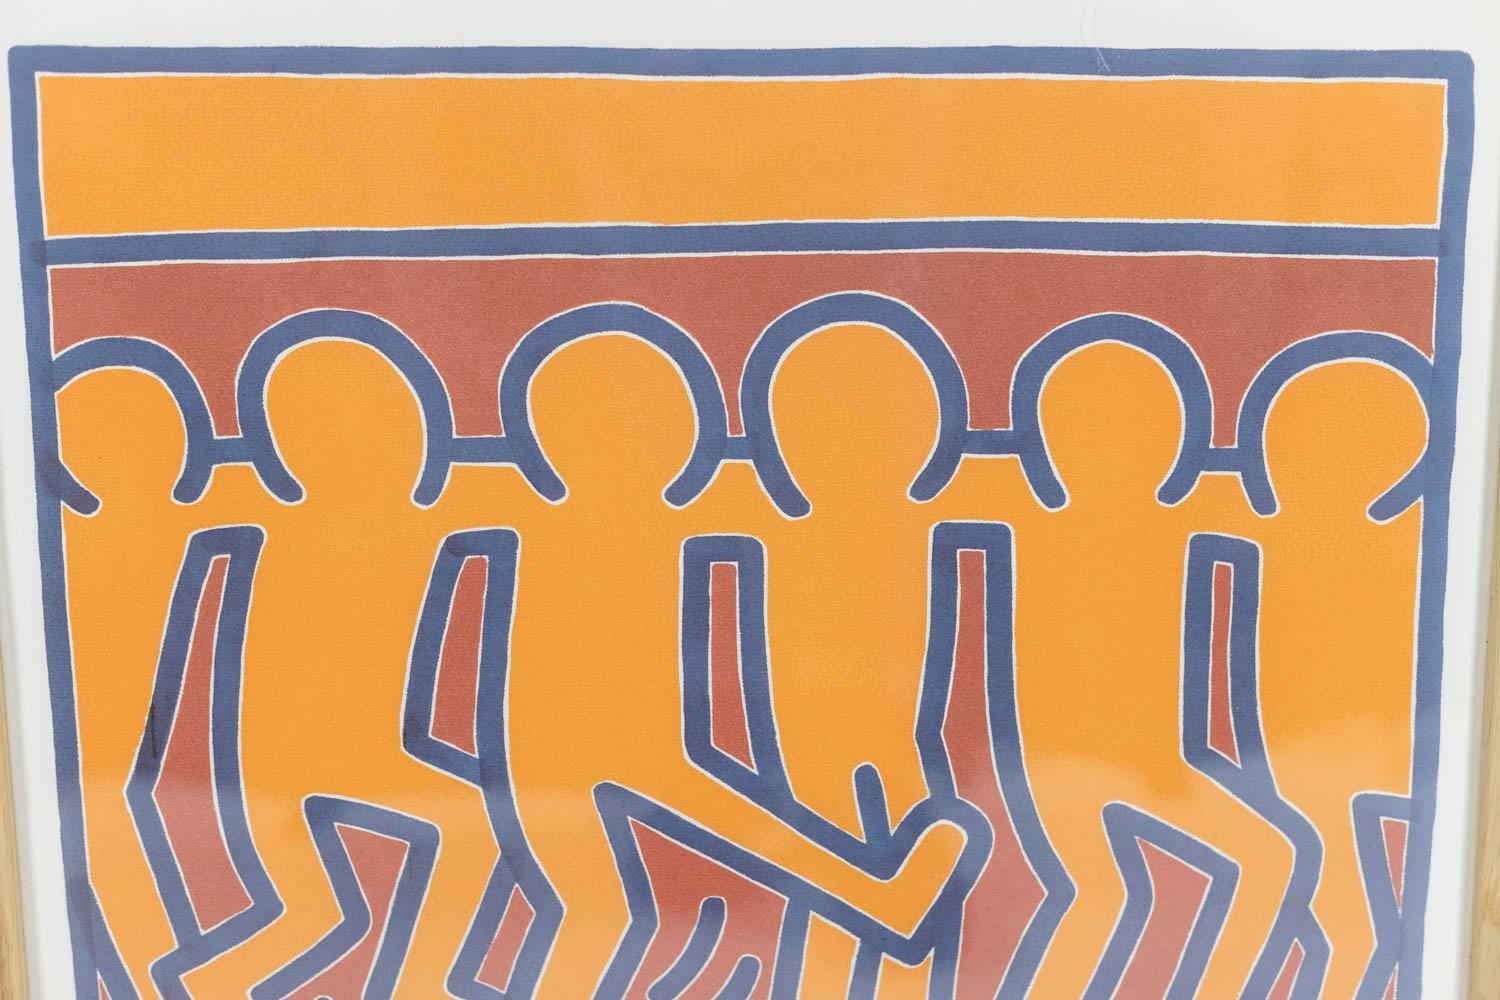 Keith Haring, signé et numéroté.

Lithographie représentant des personnages schématiques, dans des tons d'orange, de rouge et de bleu, dans son cadre en chêne blond.

Numéroté 16/150.

Travail américain réalisé dans les années 1990.